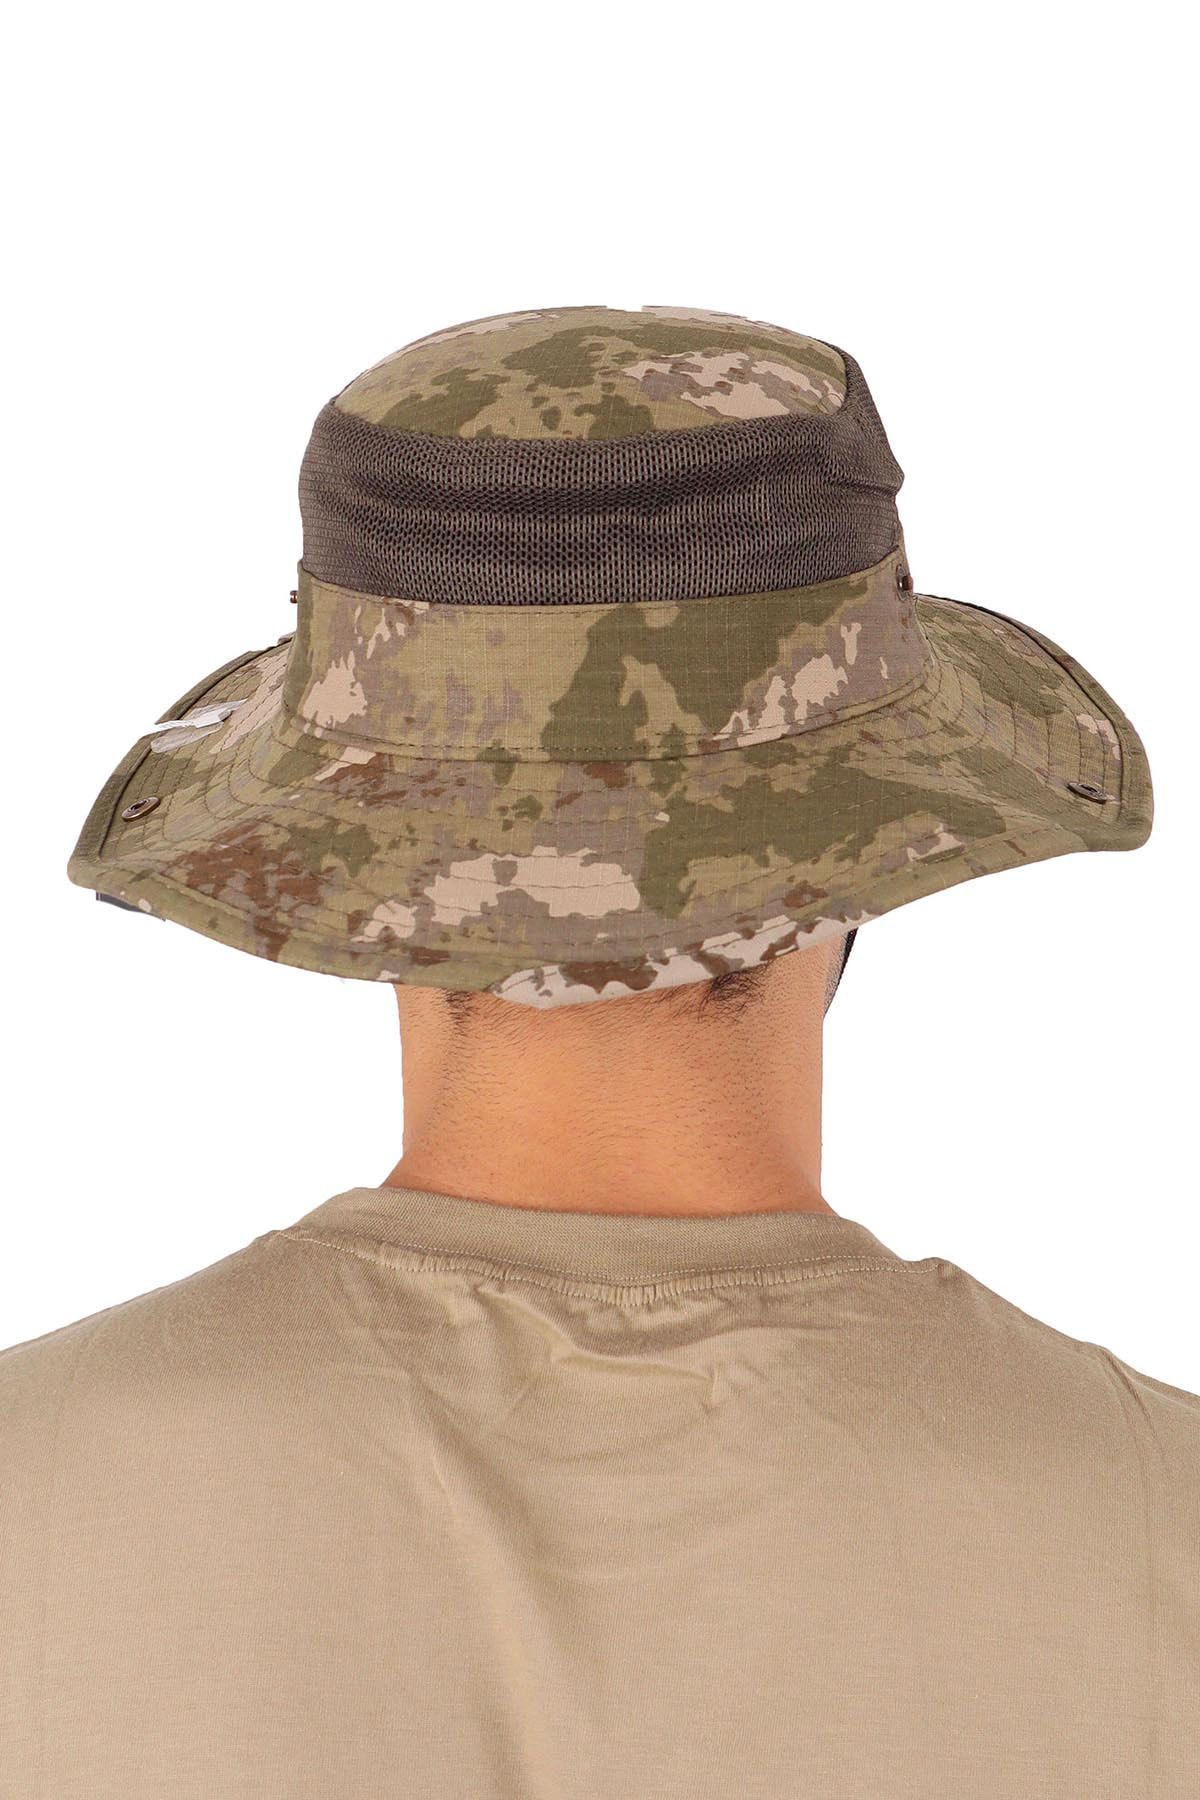 Asker Kolisi Yeni Kamuflaj Jungle Operasyon Şapkası - Fötr Askeri Şapka